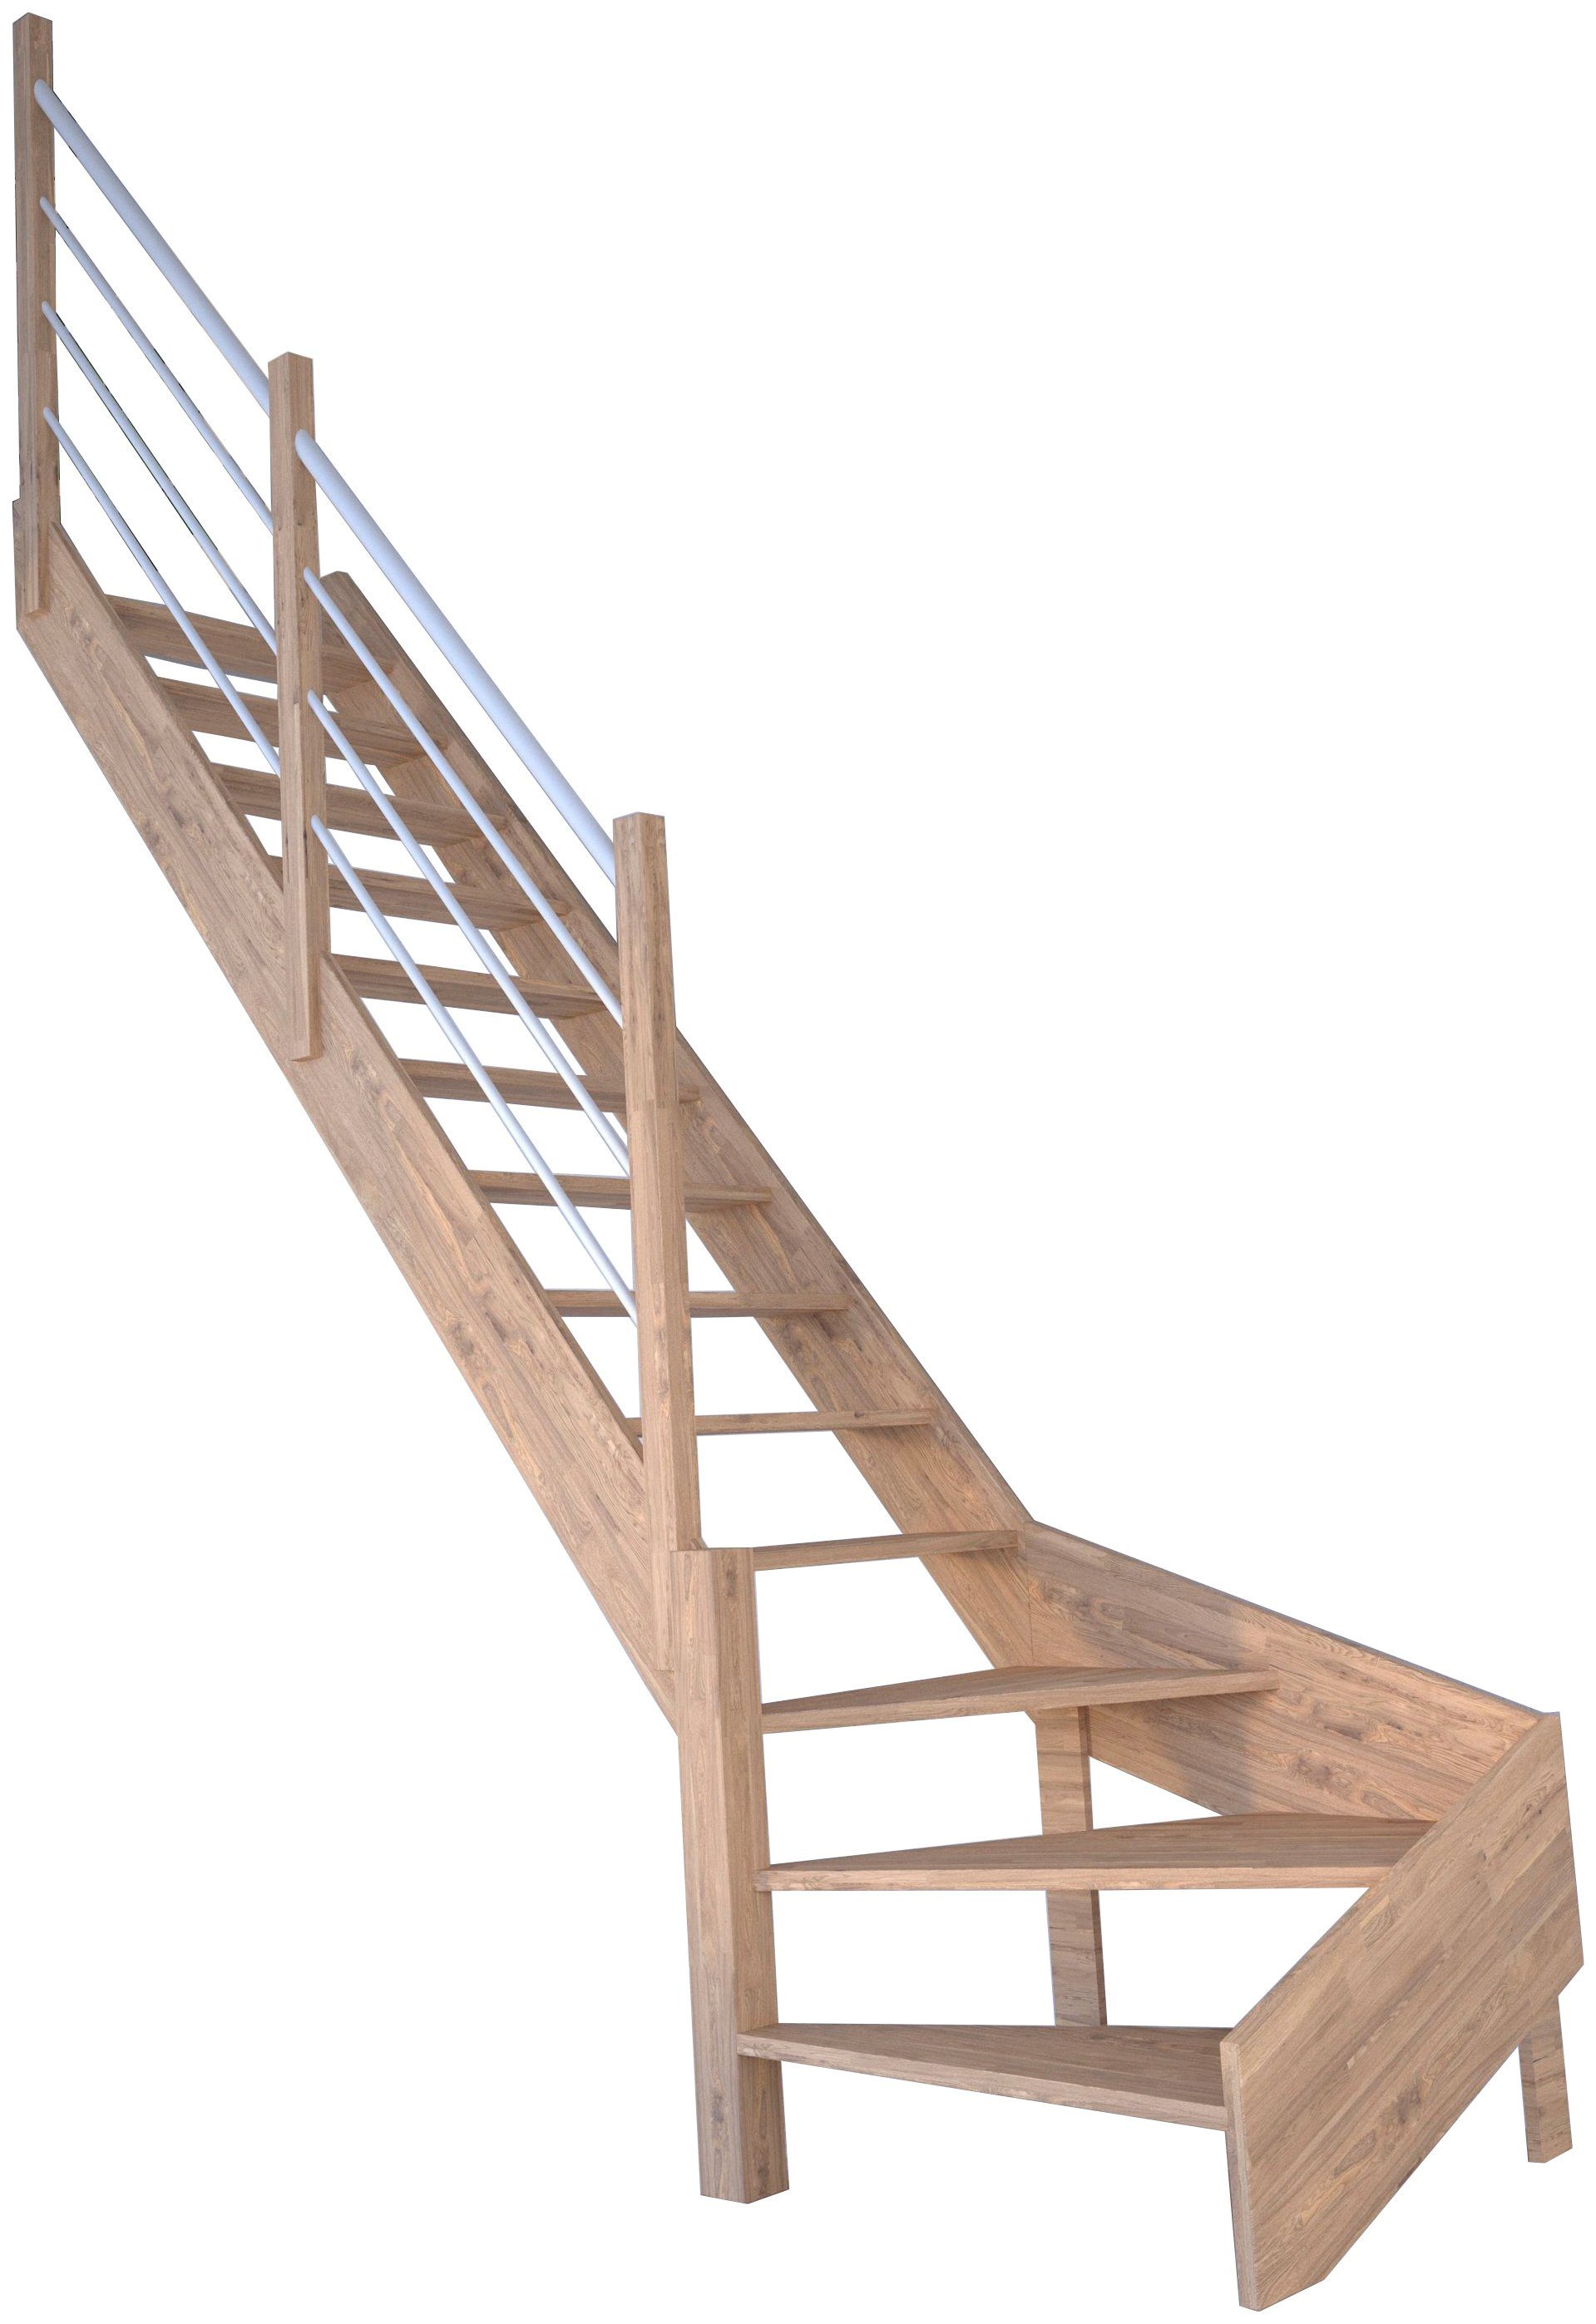 Starwood Raumspartreppe Massivholz Rhodos, Holz-Edelstahl Weiß, für Geschosshöhen bis 300 cm, Stufen offen, gewendelt Links, Durchgehende Wangenteile